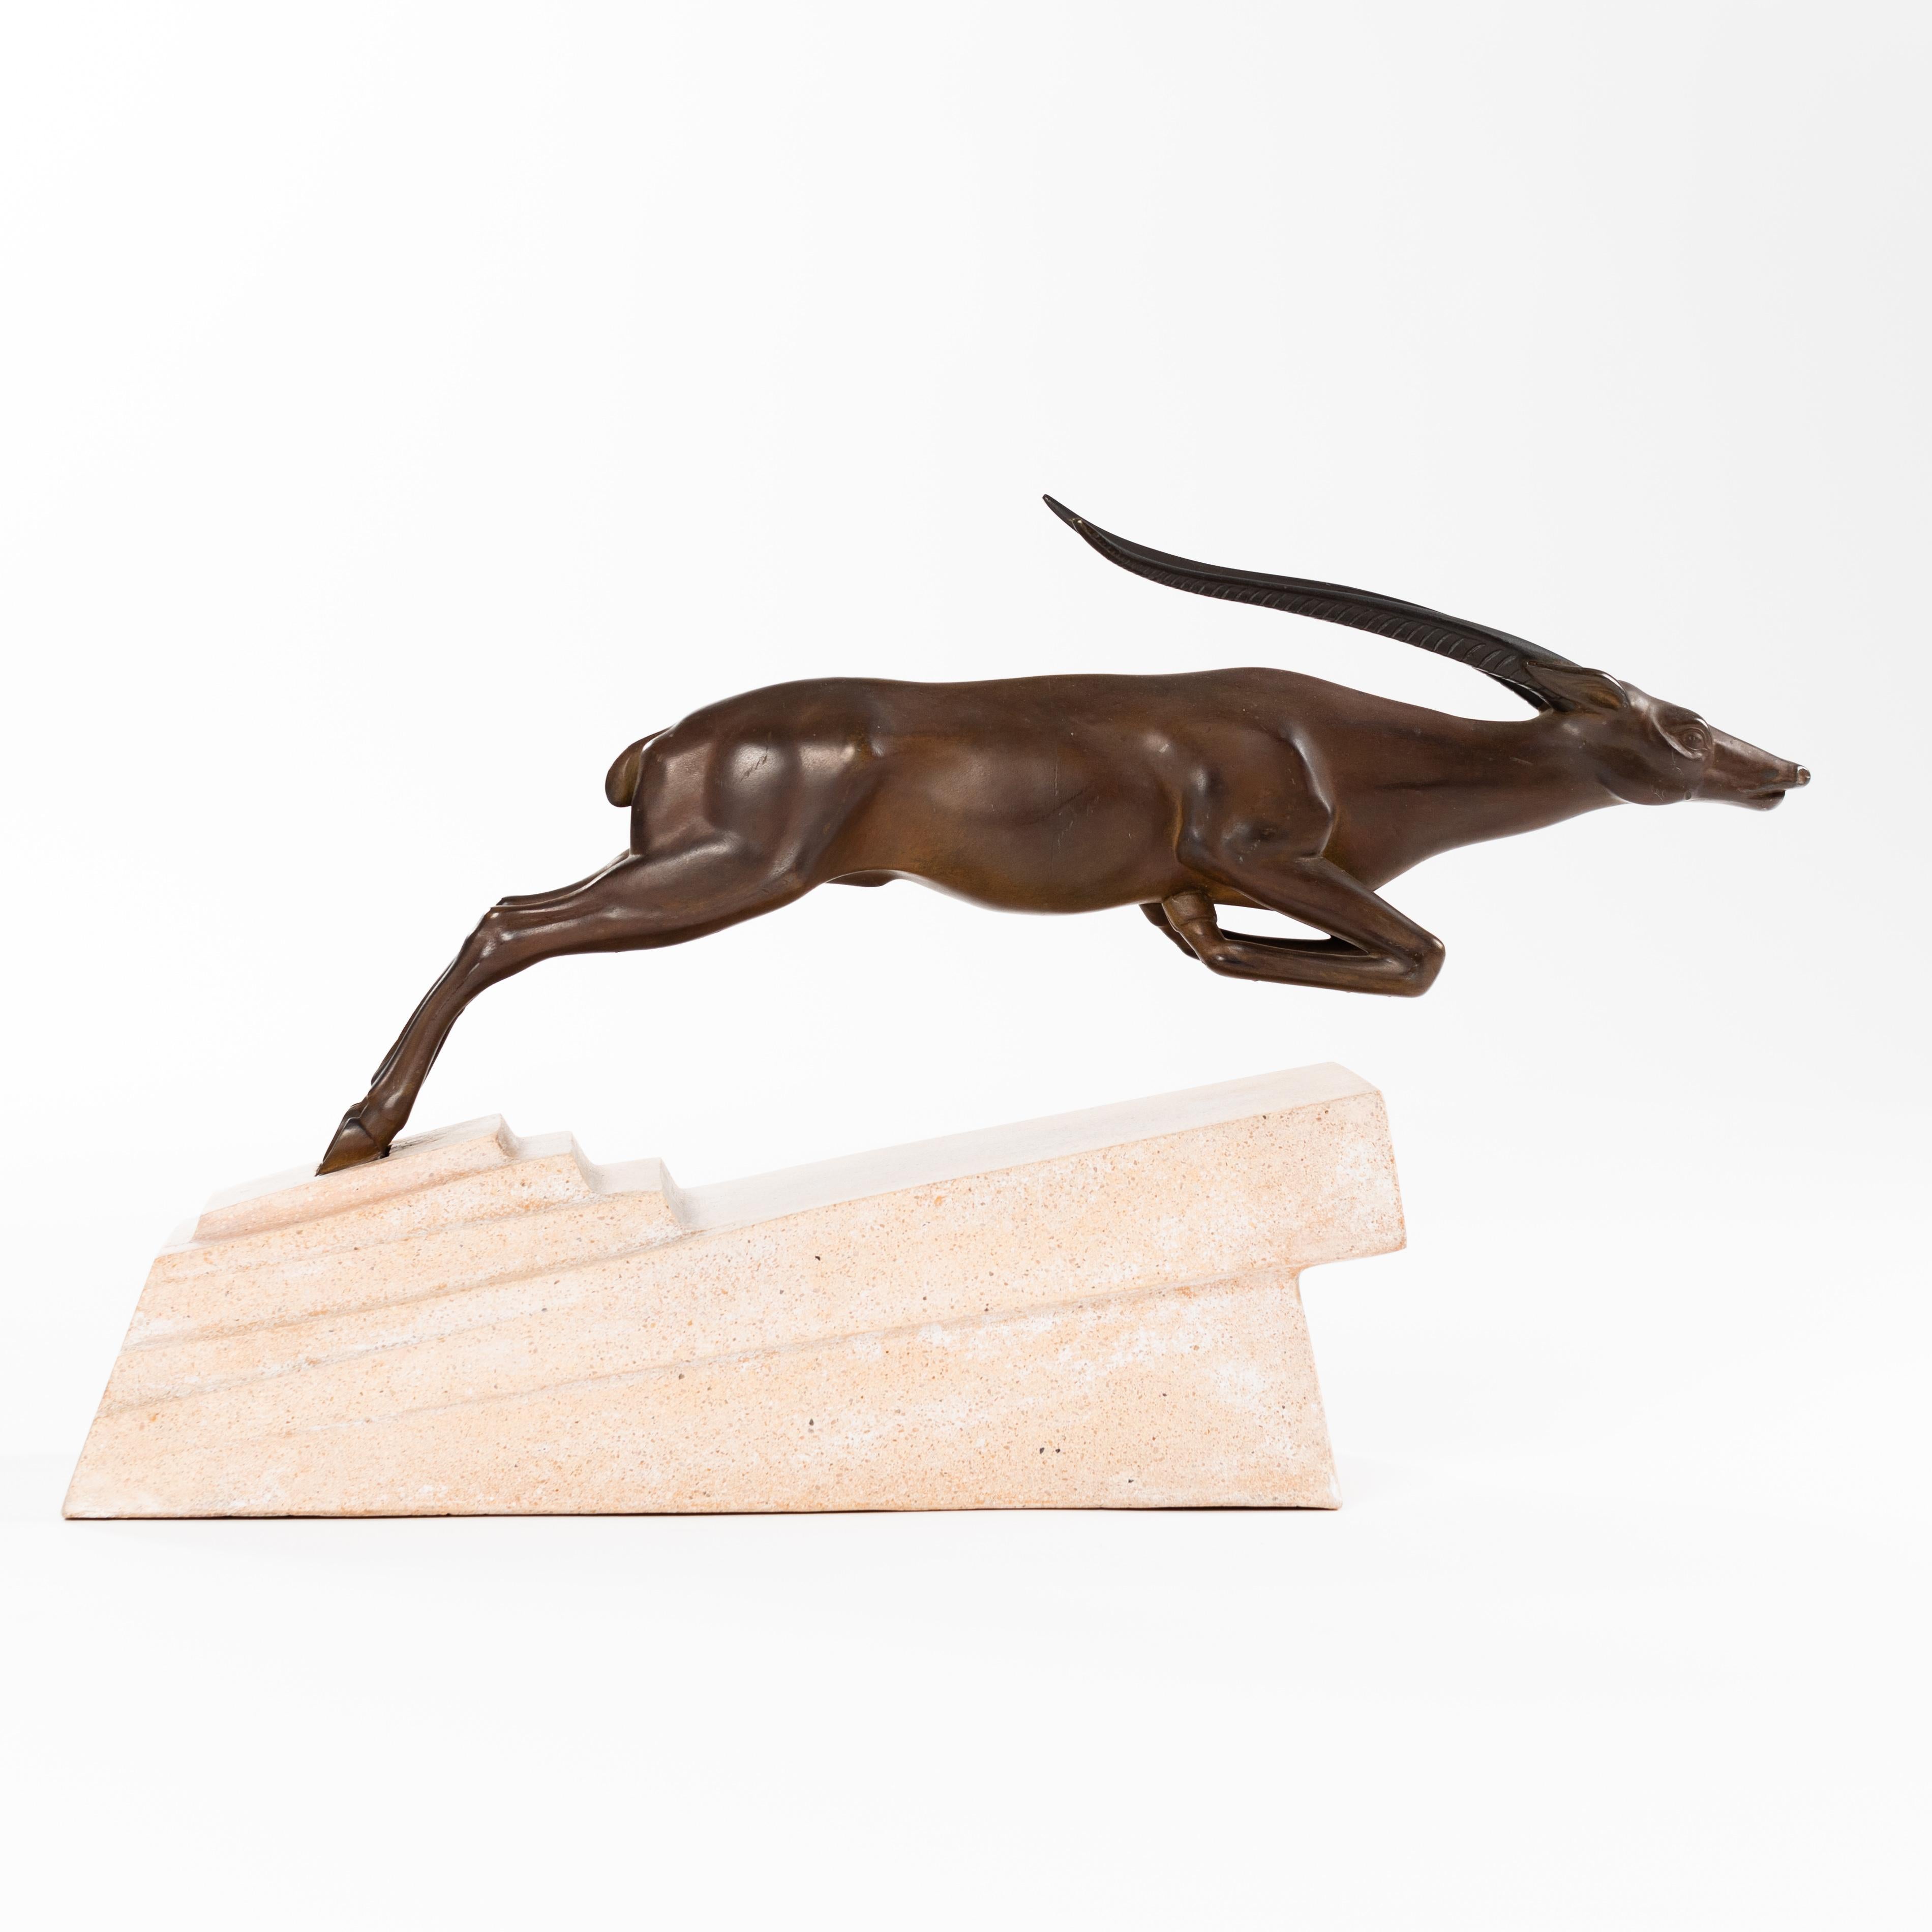 Sculpture en bronze très finement travaillée de la période de l'Art déco français.
Attribué au sculpteur Max Le Verrier.

L'antilope saute, la dynamique et le mouvement de l'animal sont très bien rendus dans la représentation.
Le bronze est brun,